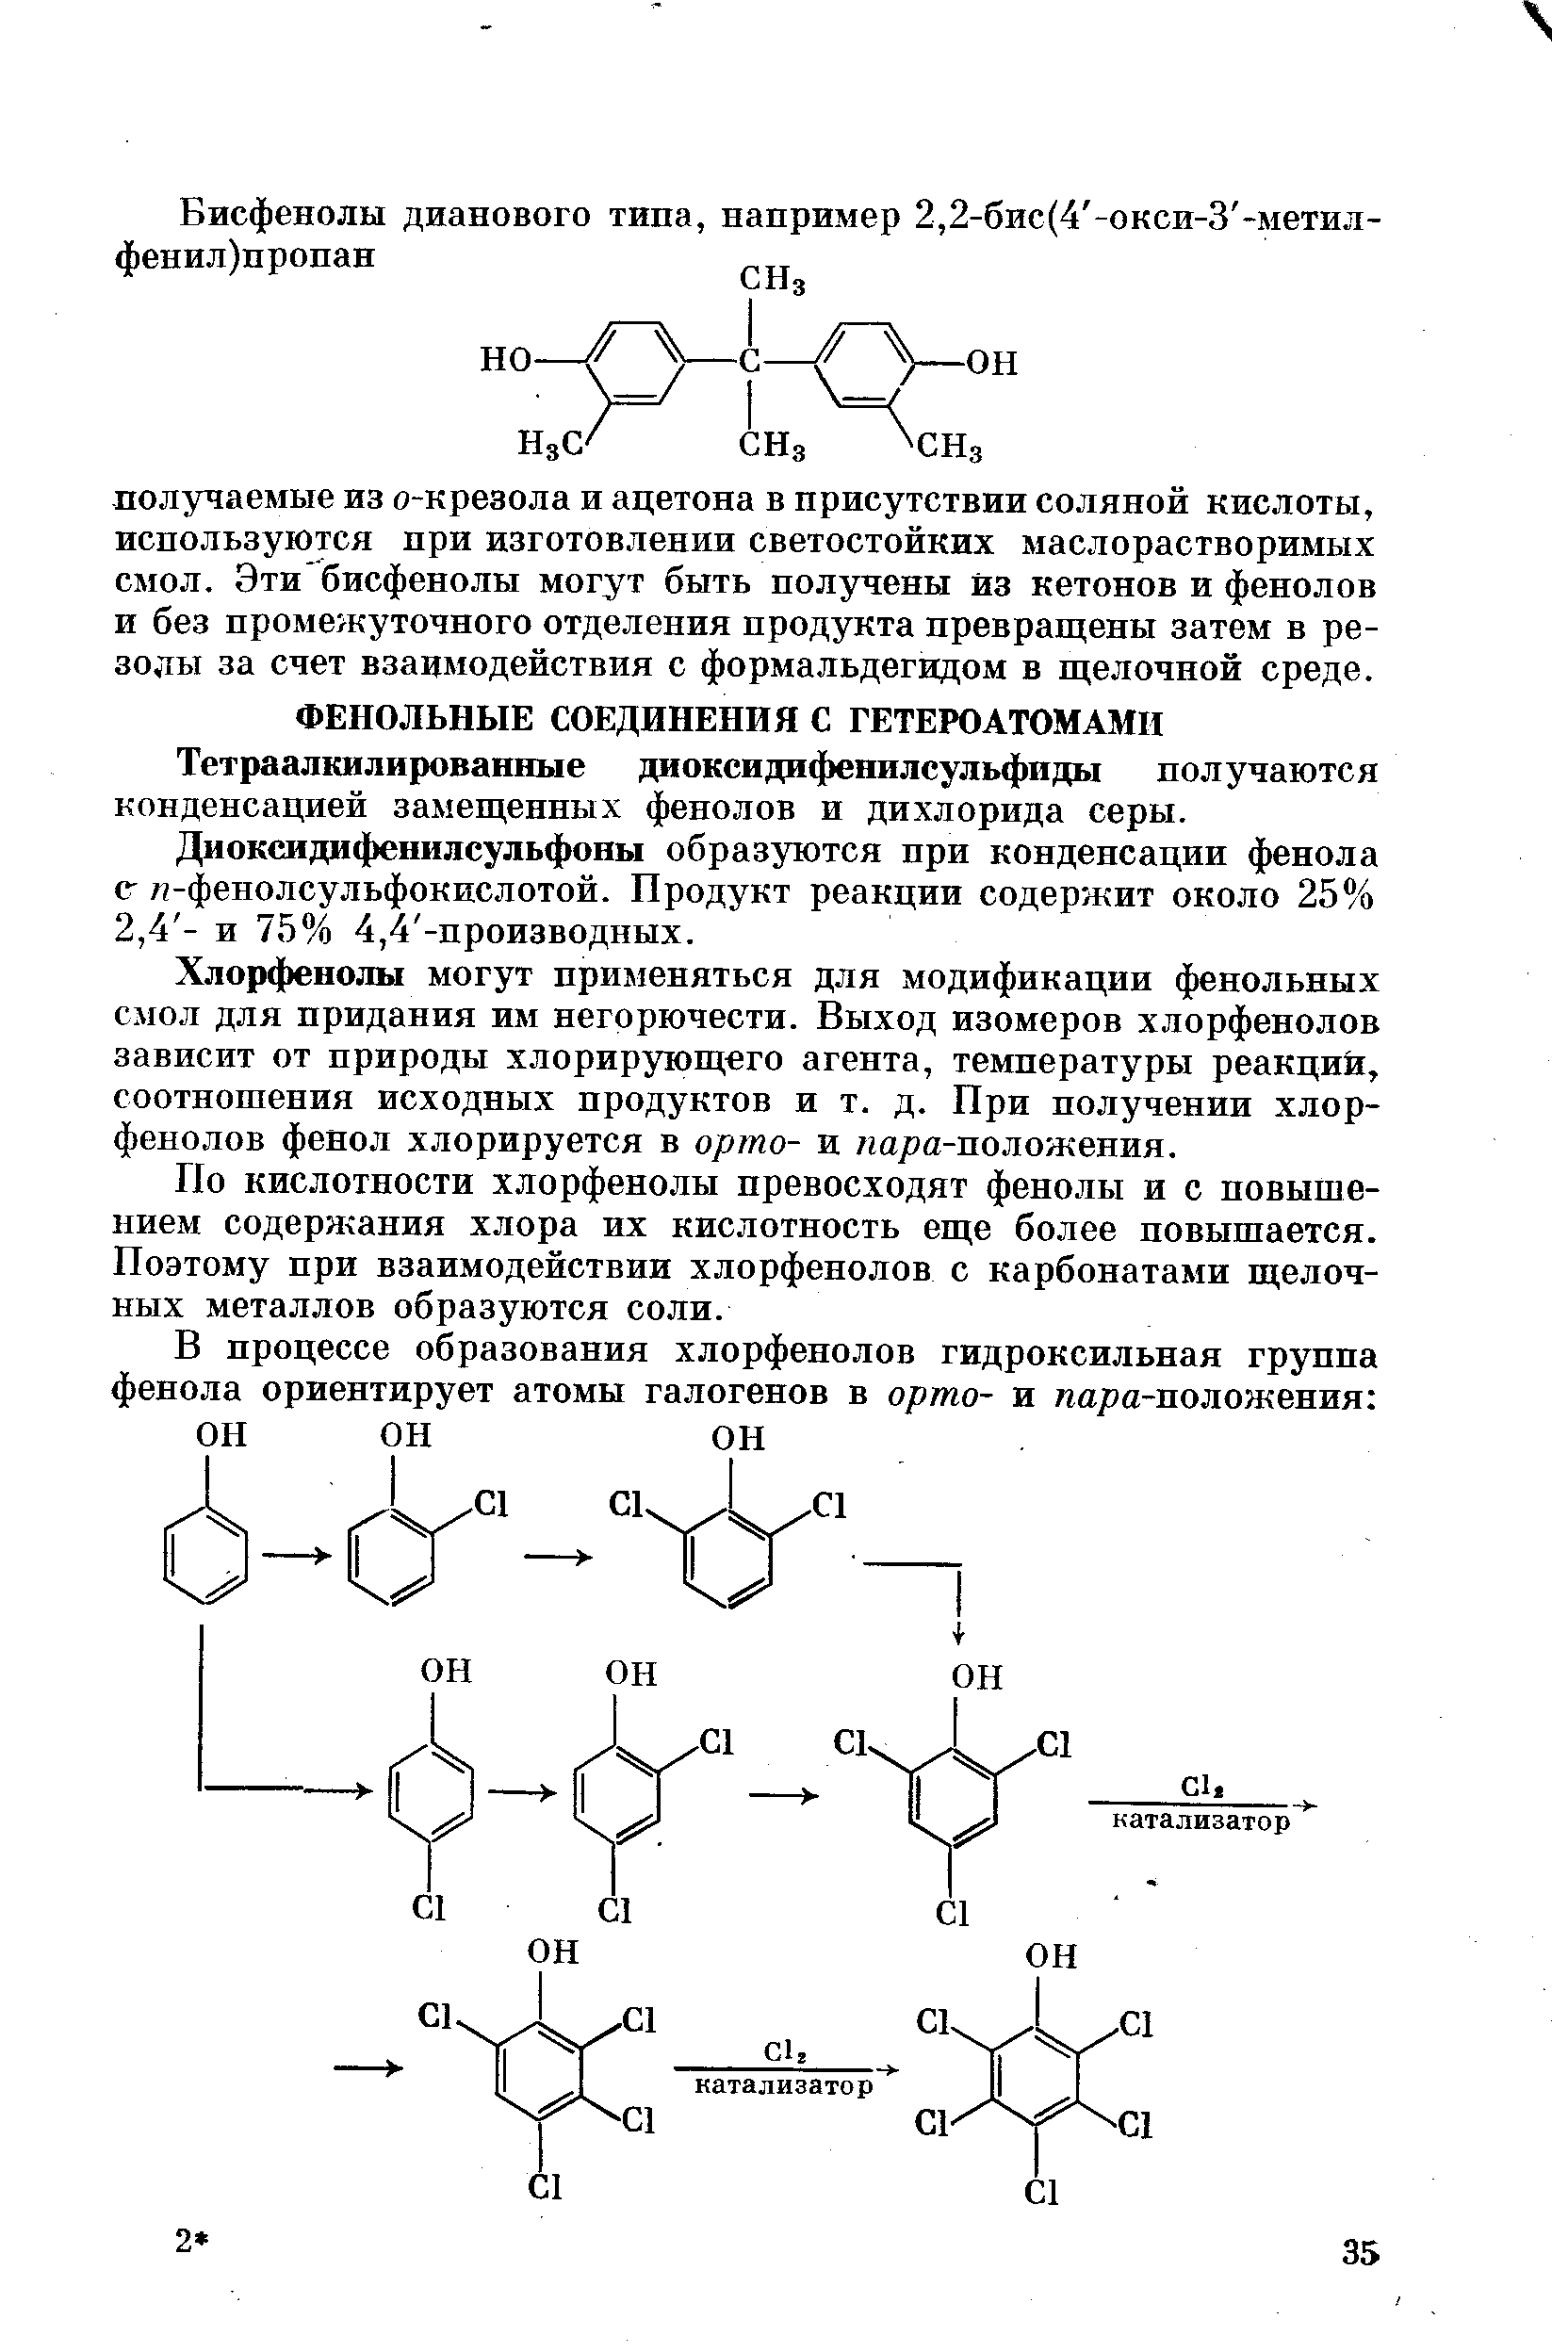 Диоксидифенилсульфоны образуются при конденсации фенола (Г л-фенолсульфокислотой. Продукт реакции содержит около 25% 2,4 - и 75% 4,4 -производных.